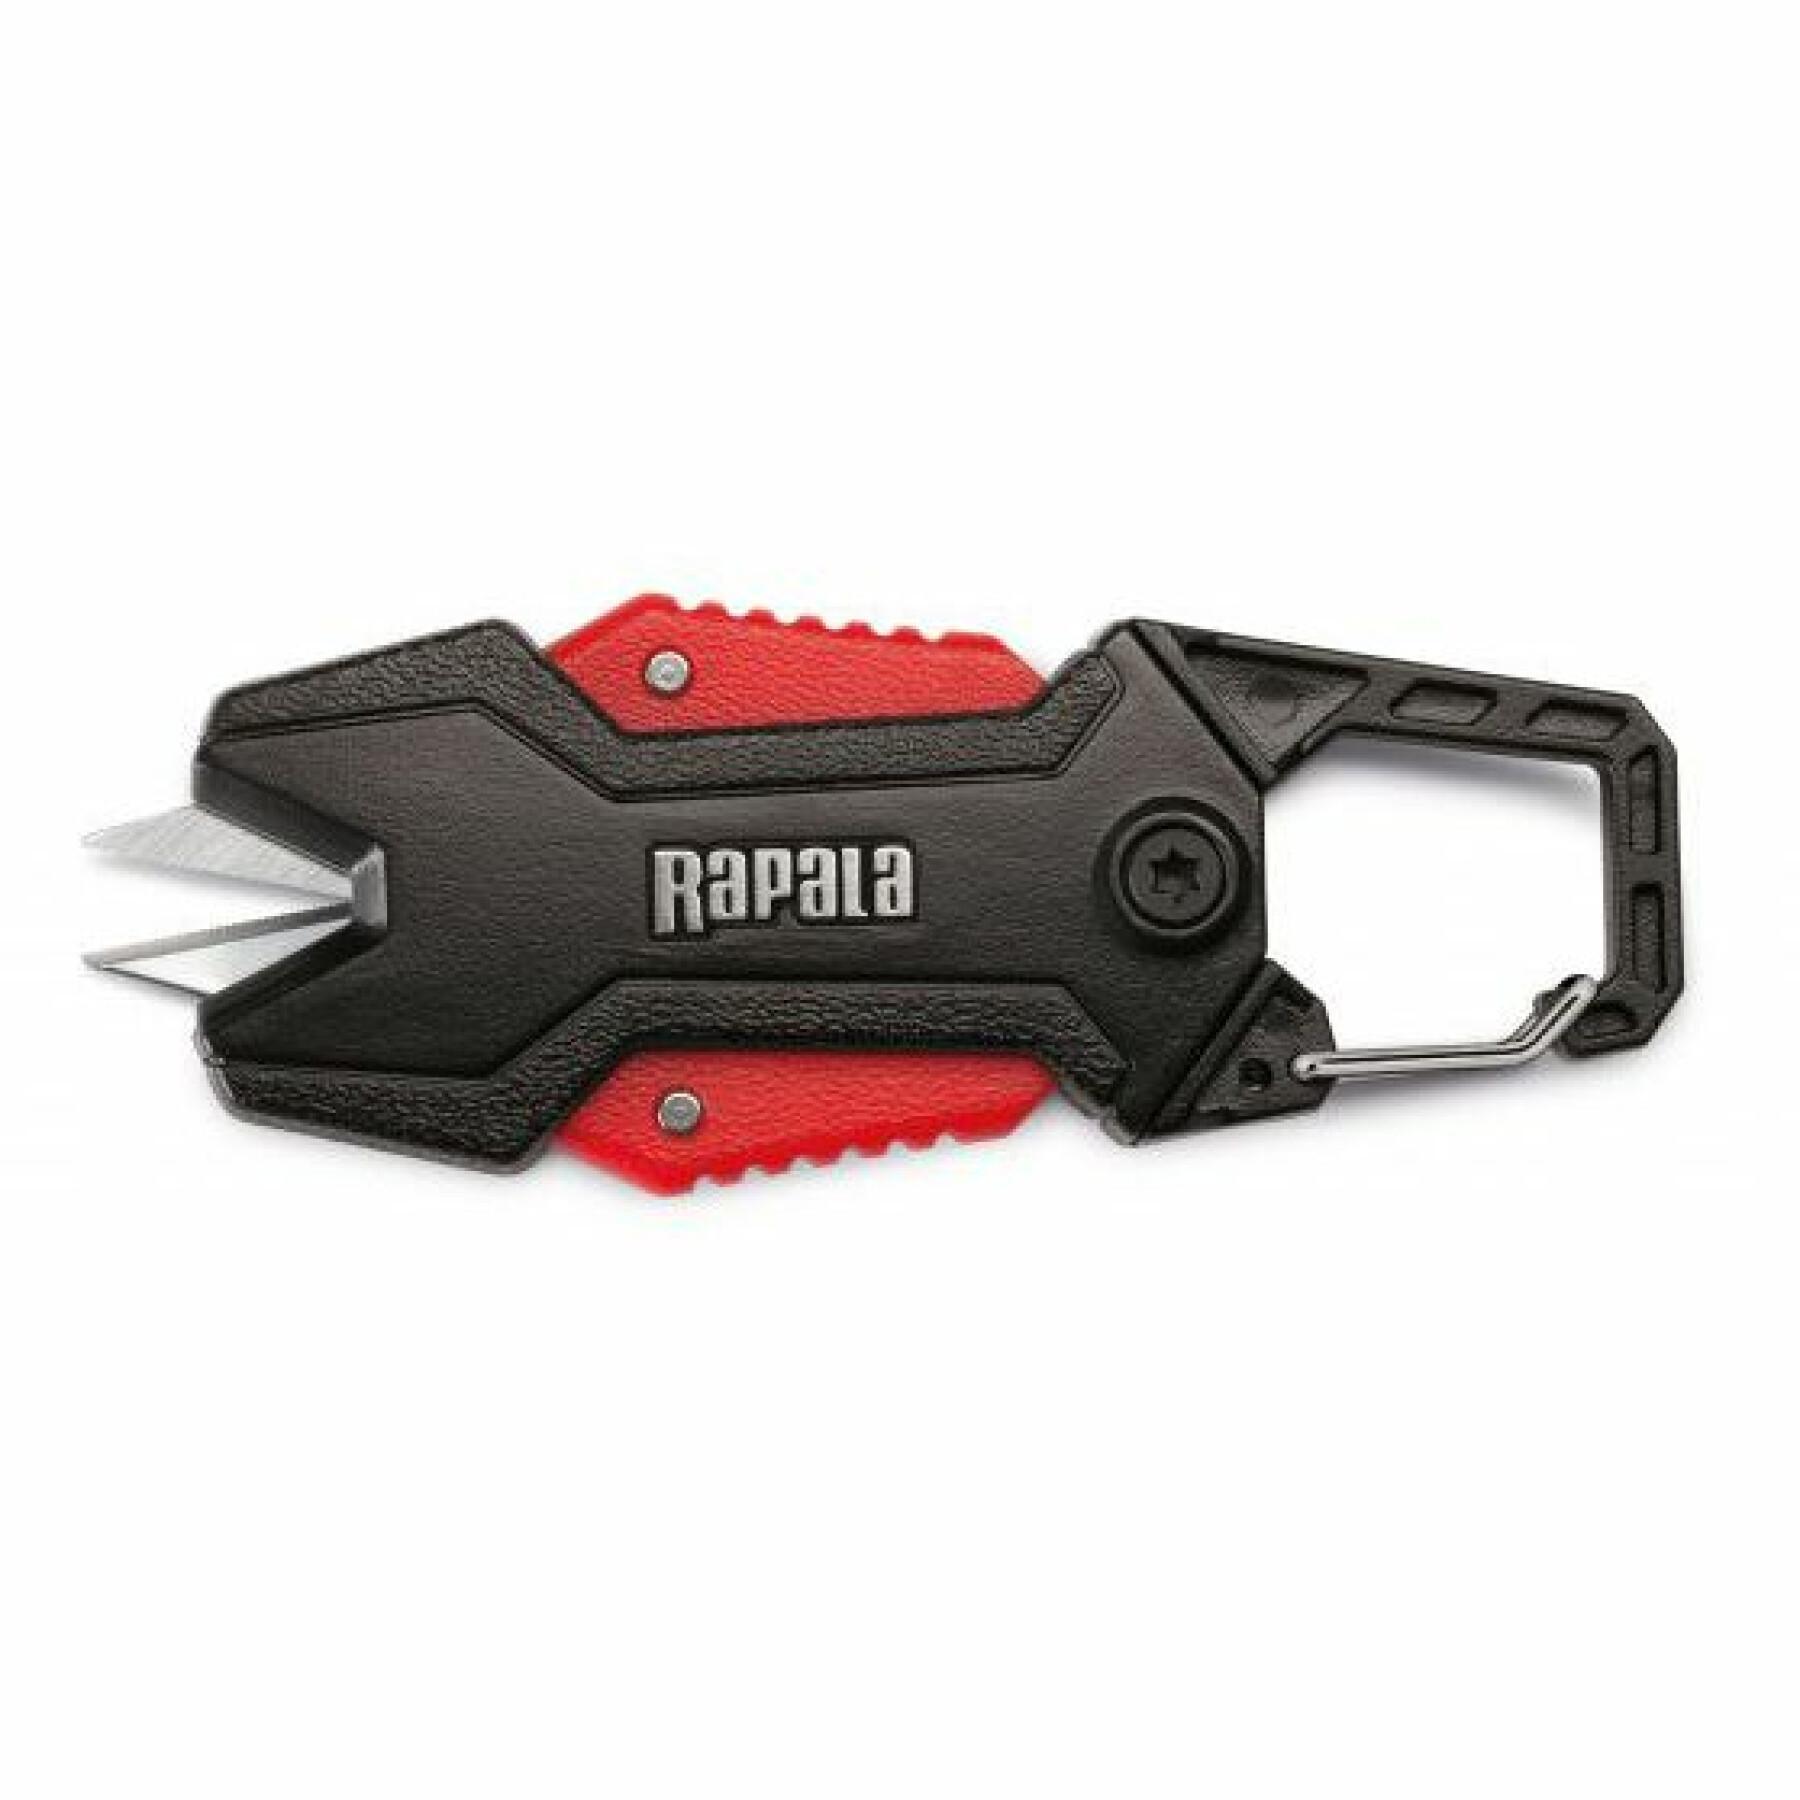 Retractable scissors Rapala rcd